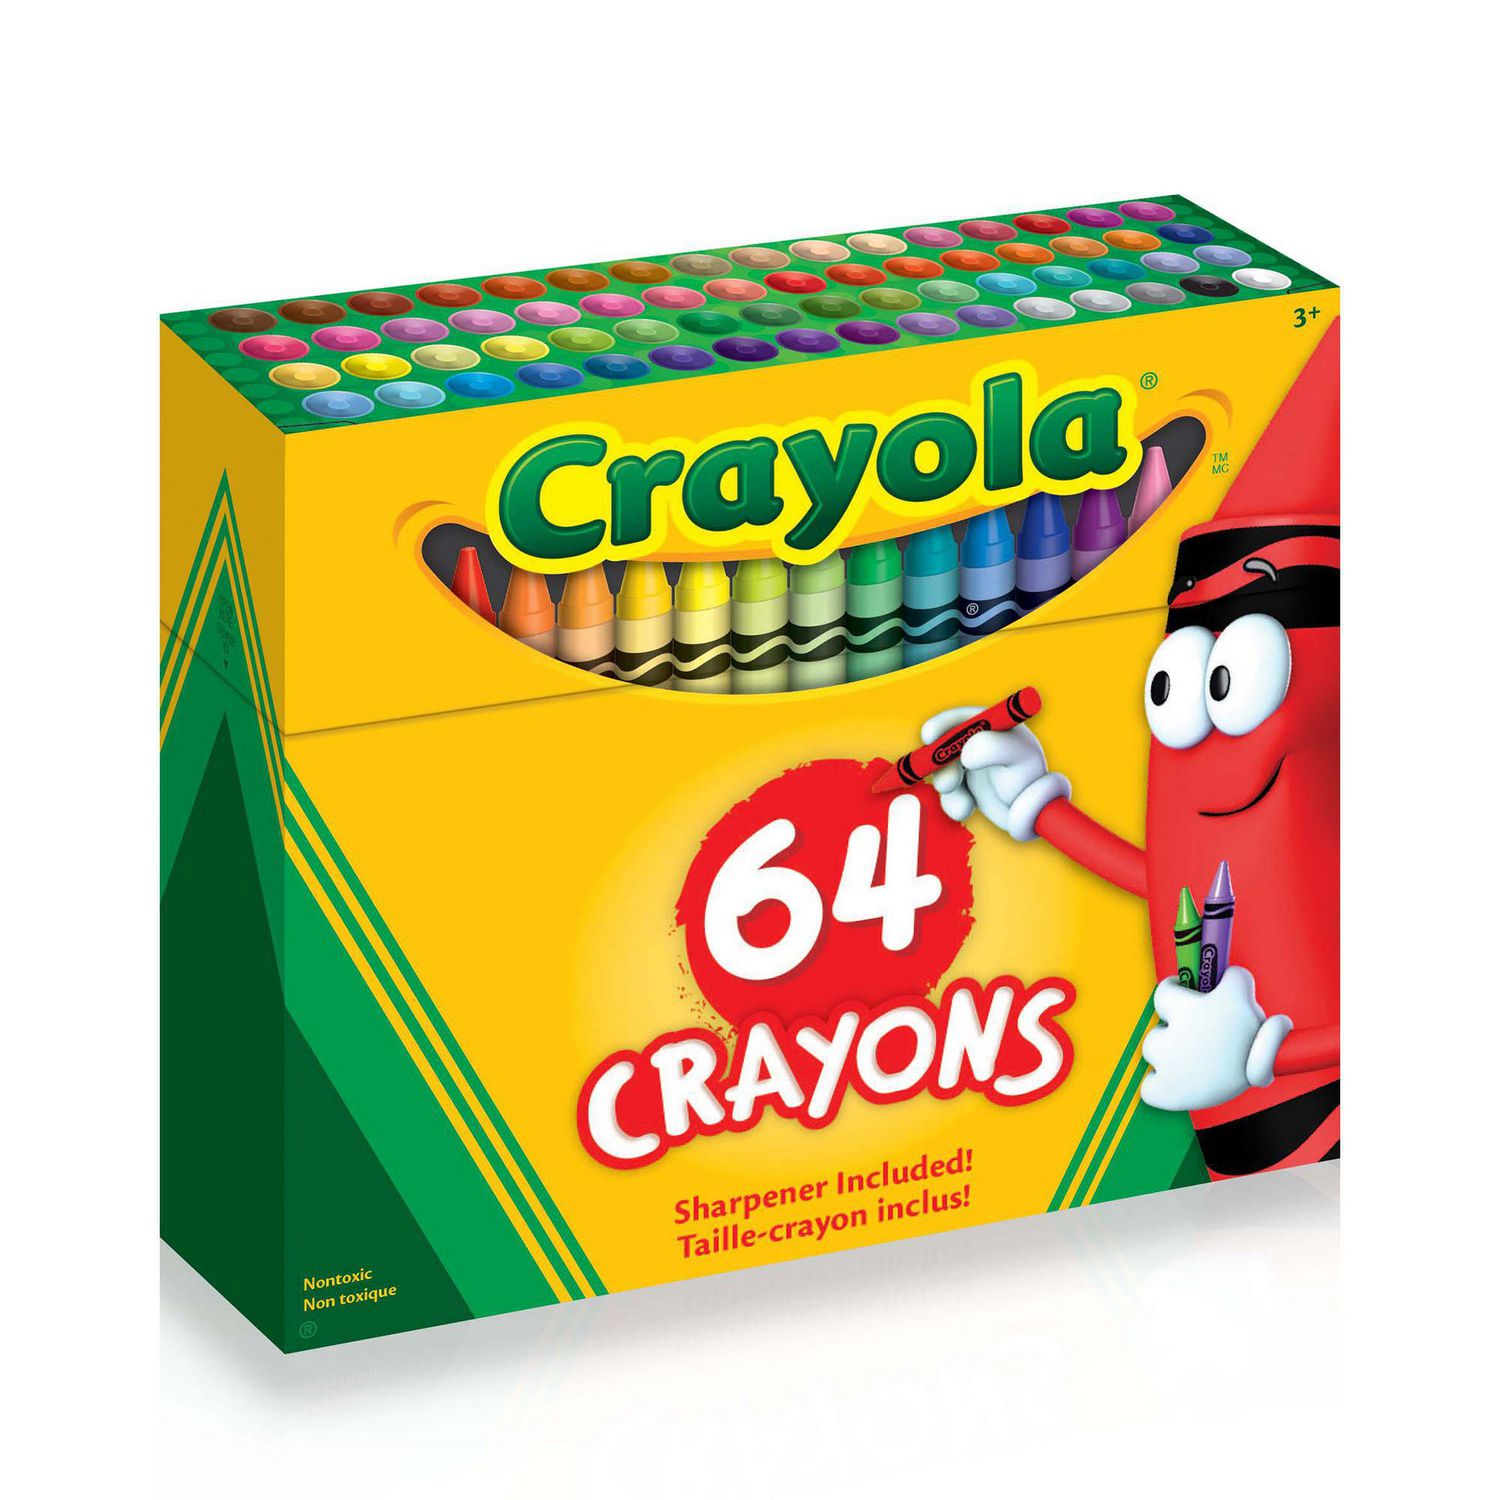 Crayola Coloured Pencils, 48 Count, 48 coloured pencils 